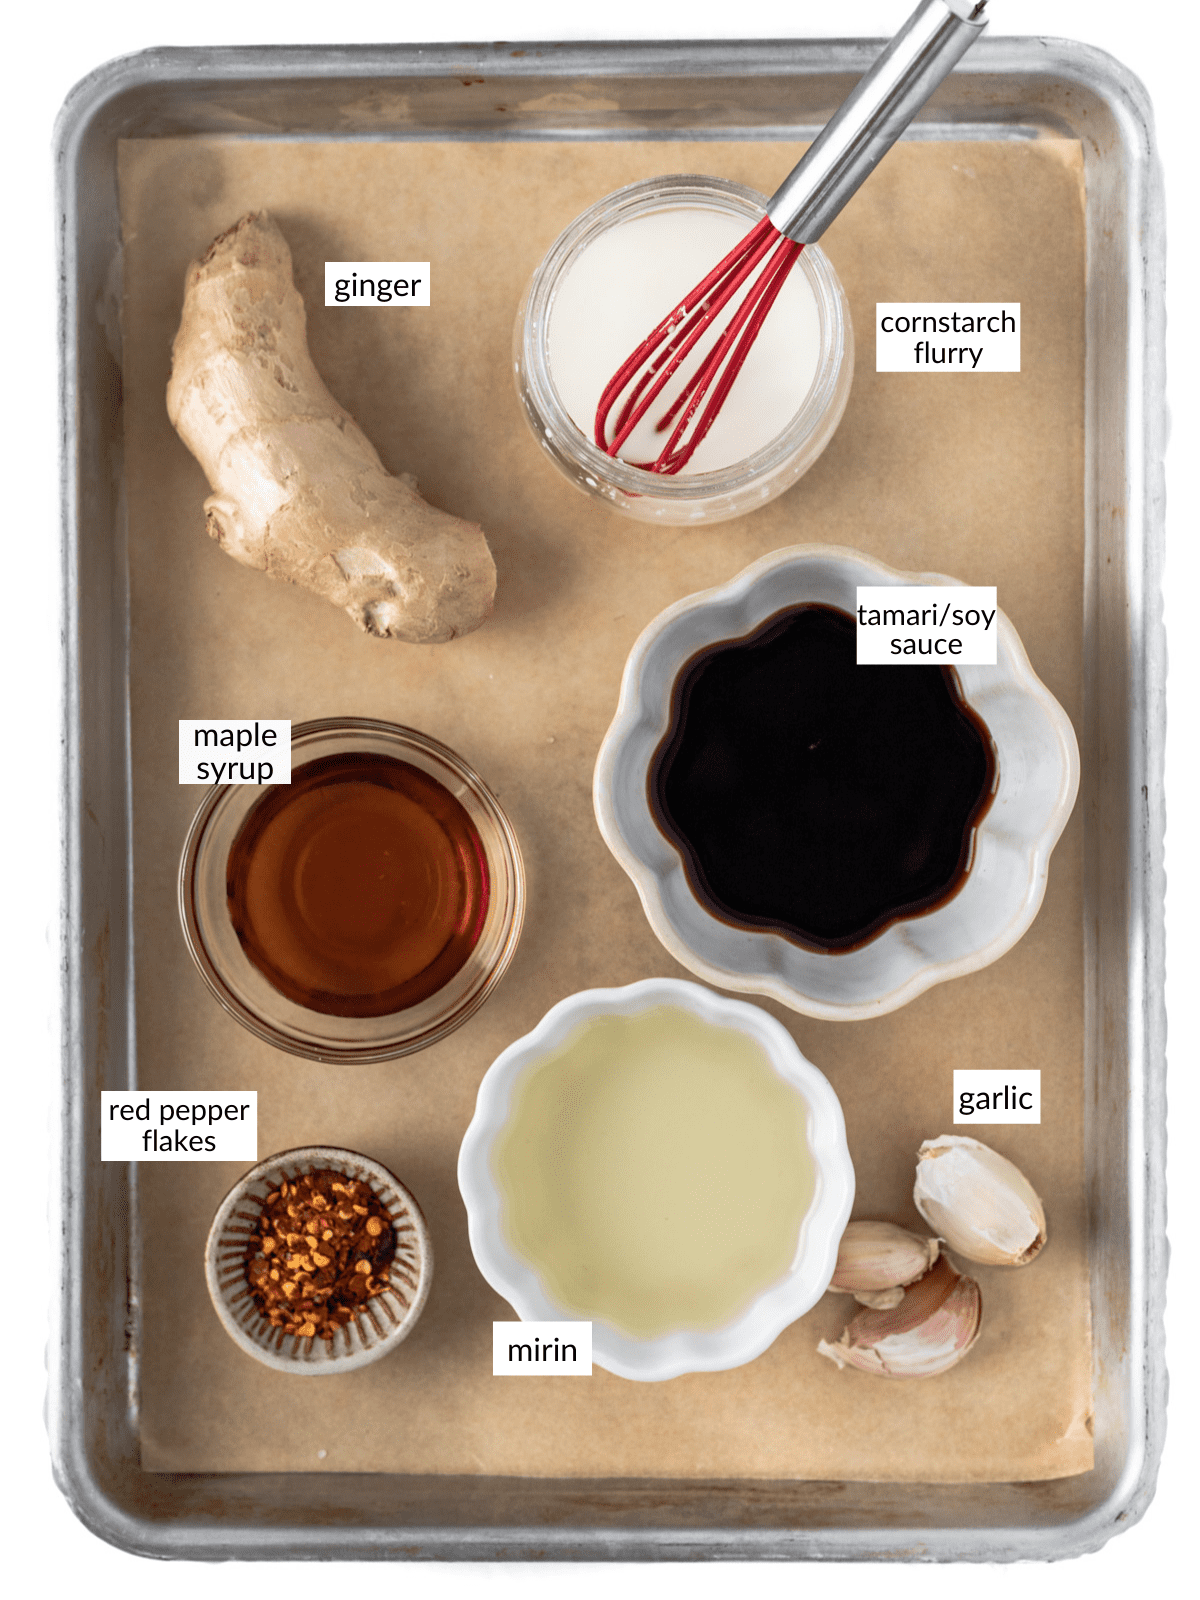 Teriyaki sauce ingredients set out on a sheet pan.